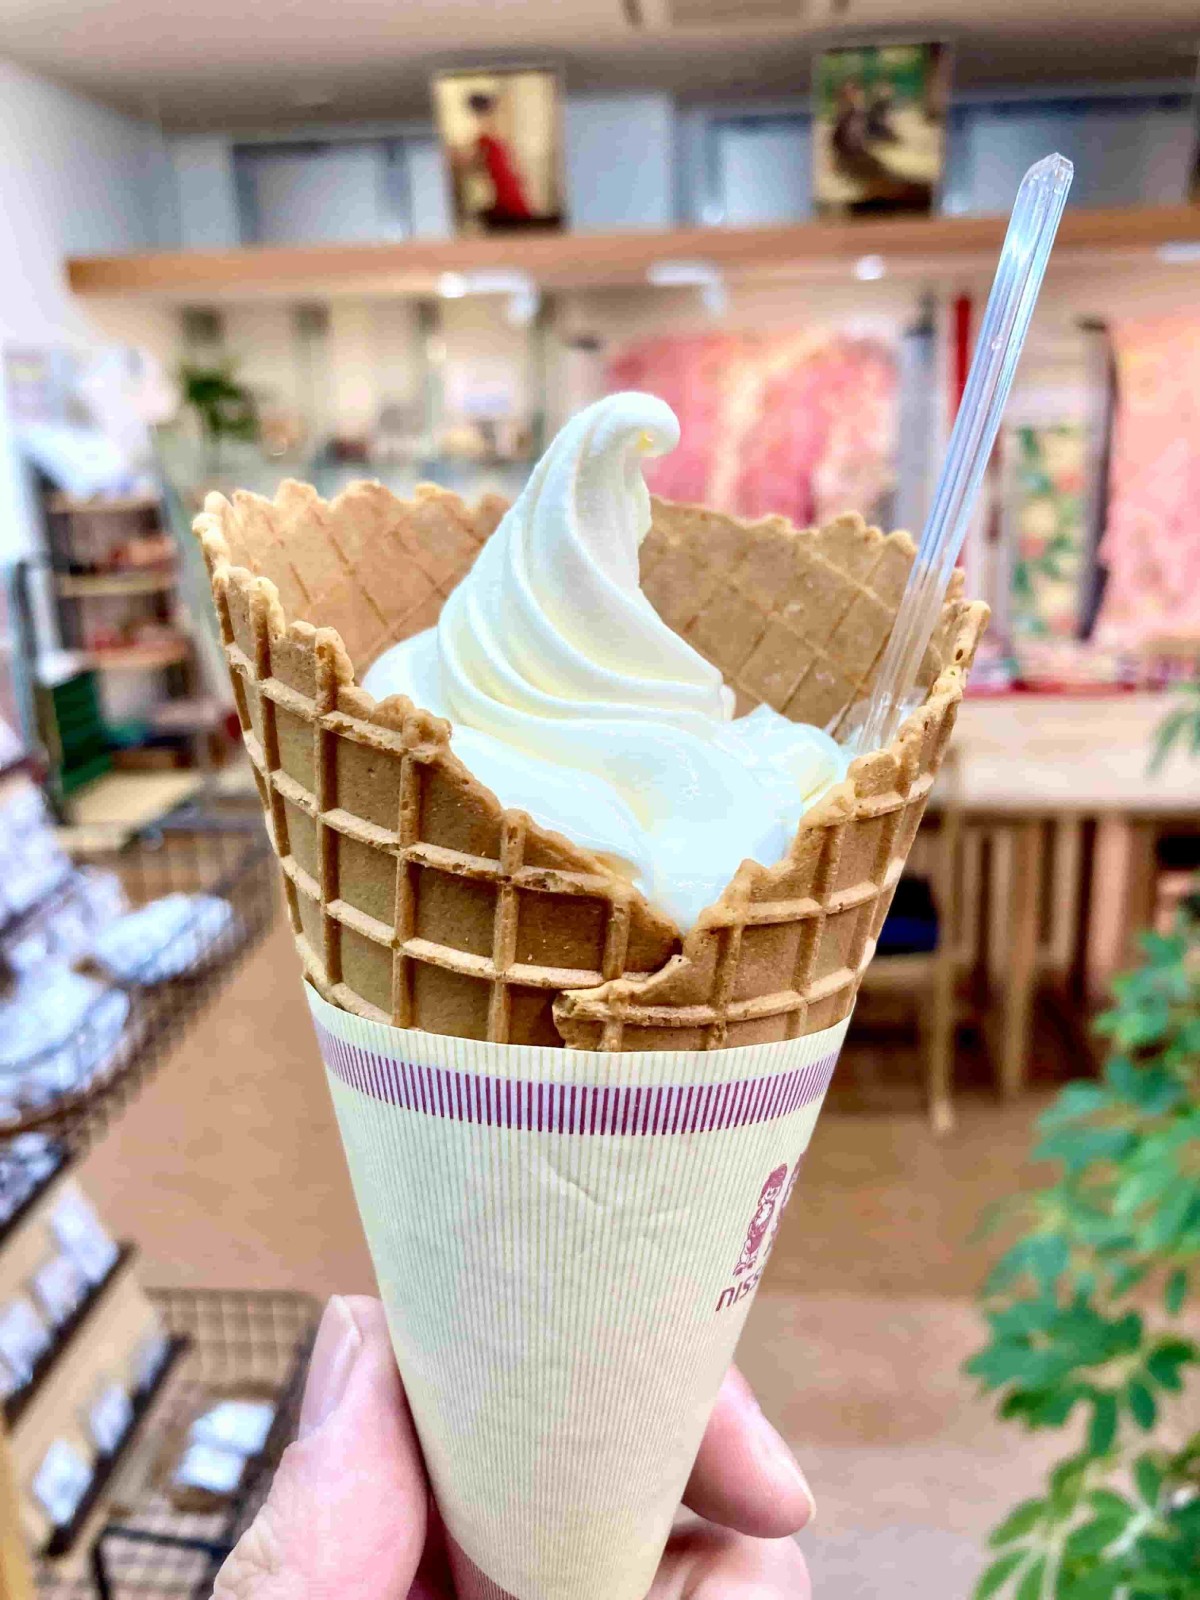 島根県出雲市の『影山呉服店』でテイクアウトできる「絹練りソフトクリーム」